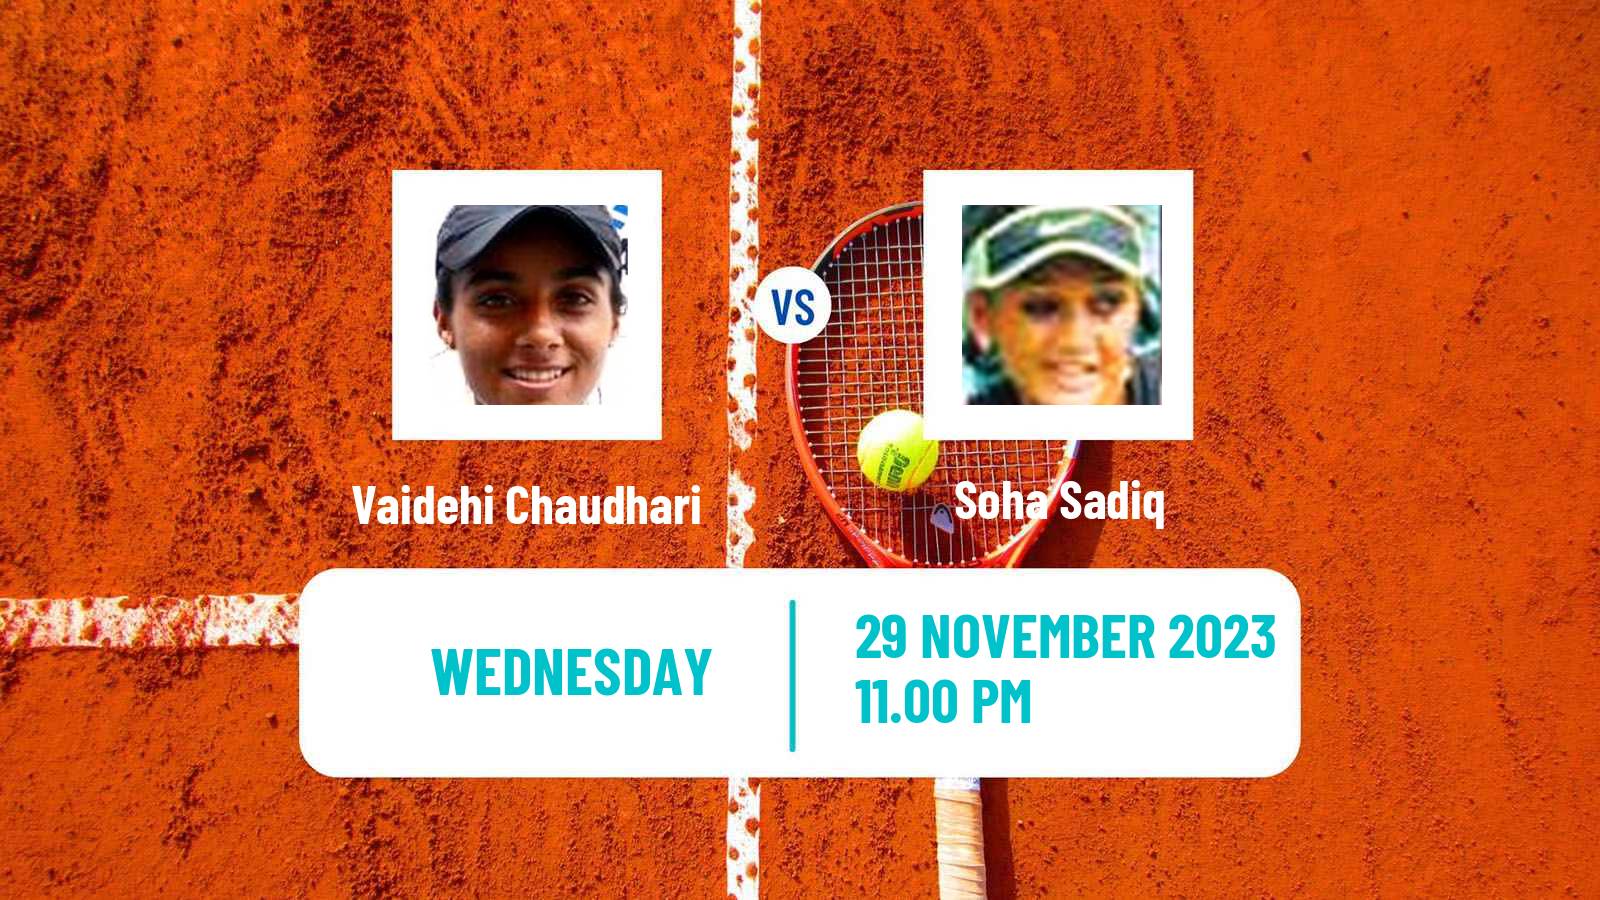 Tennis ITF W15 Ahmedabad Women Vaidehi Chaudhari - Soha Sadiq